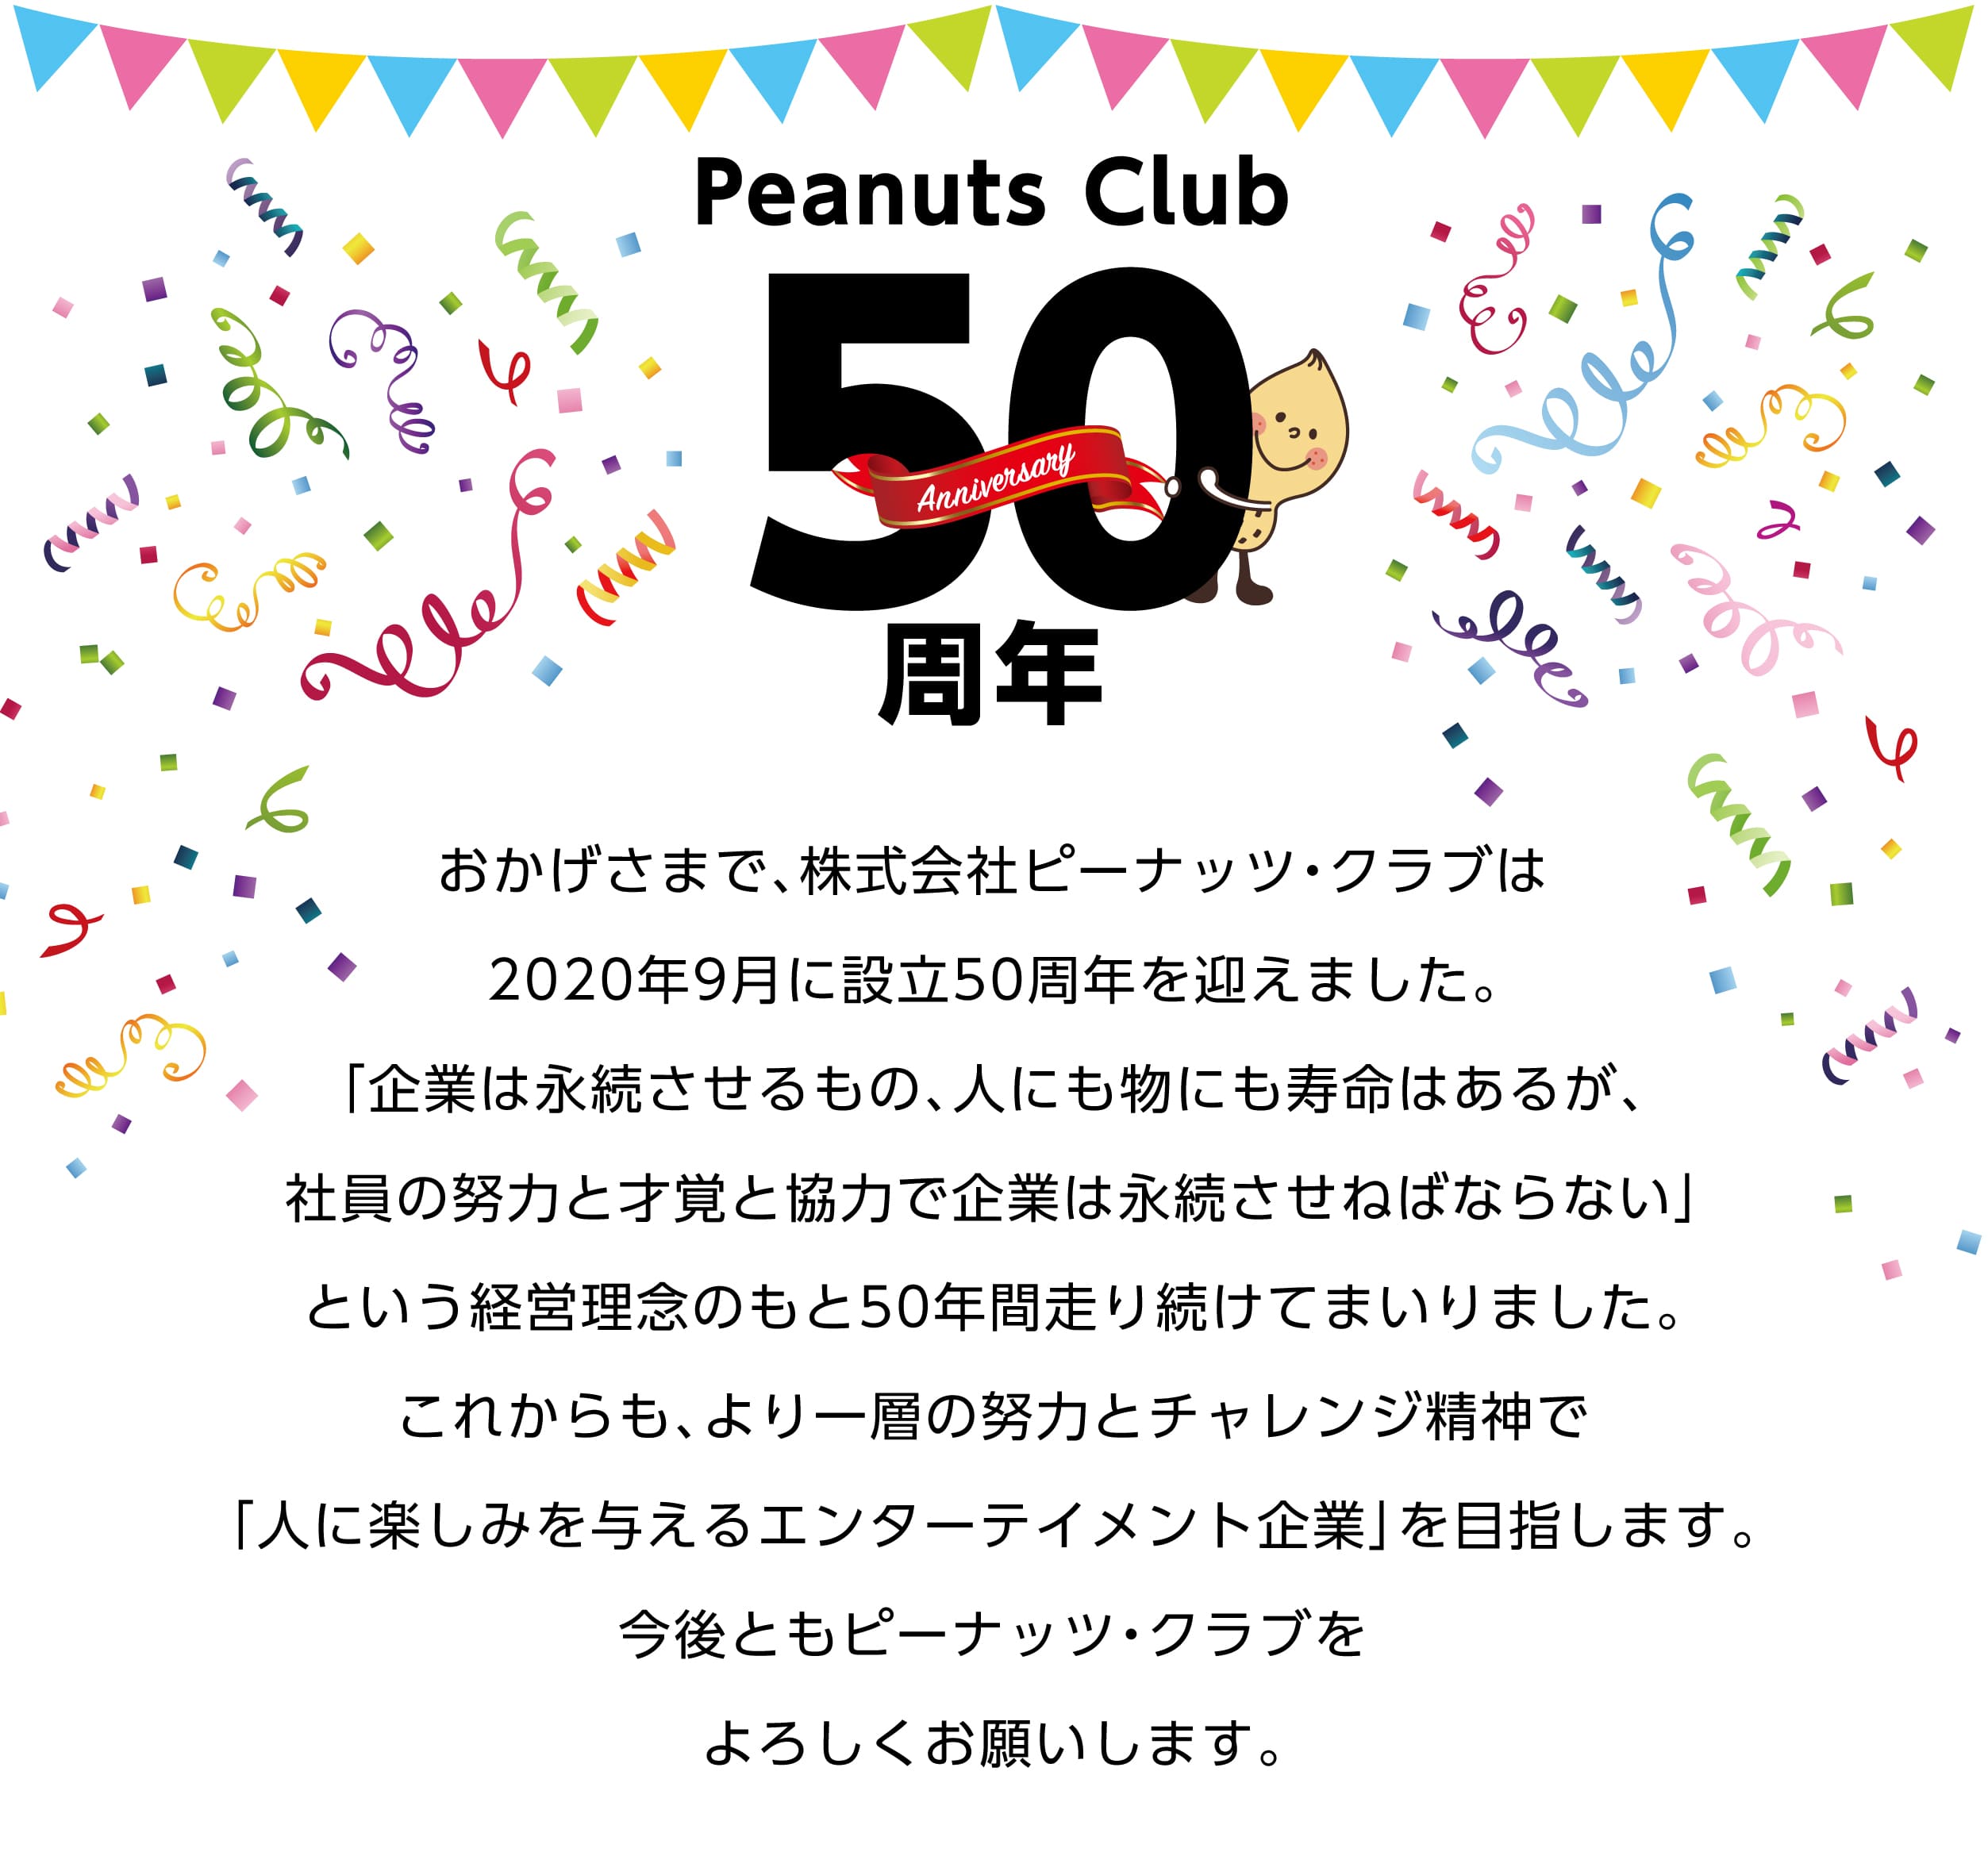 おかげさまで、株式会社ピーナツクラブは2020年9月に設立50周年を迎えました。